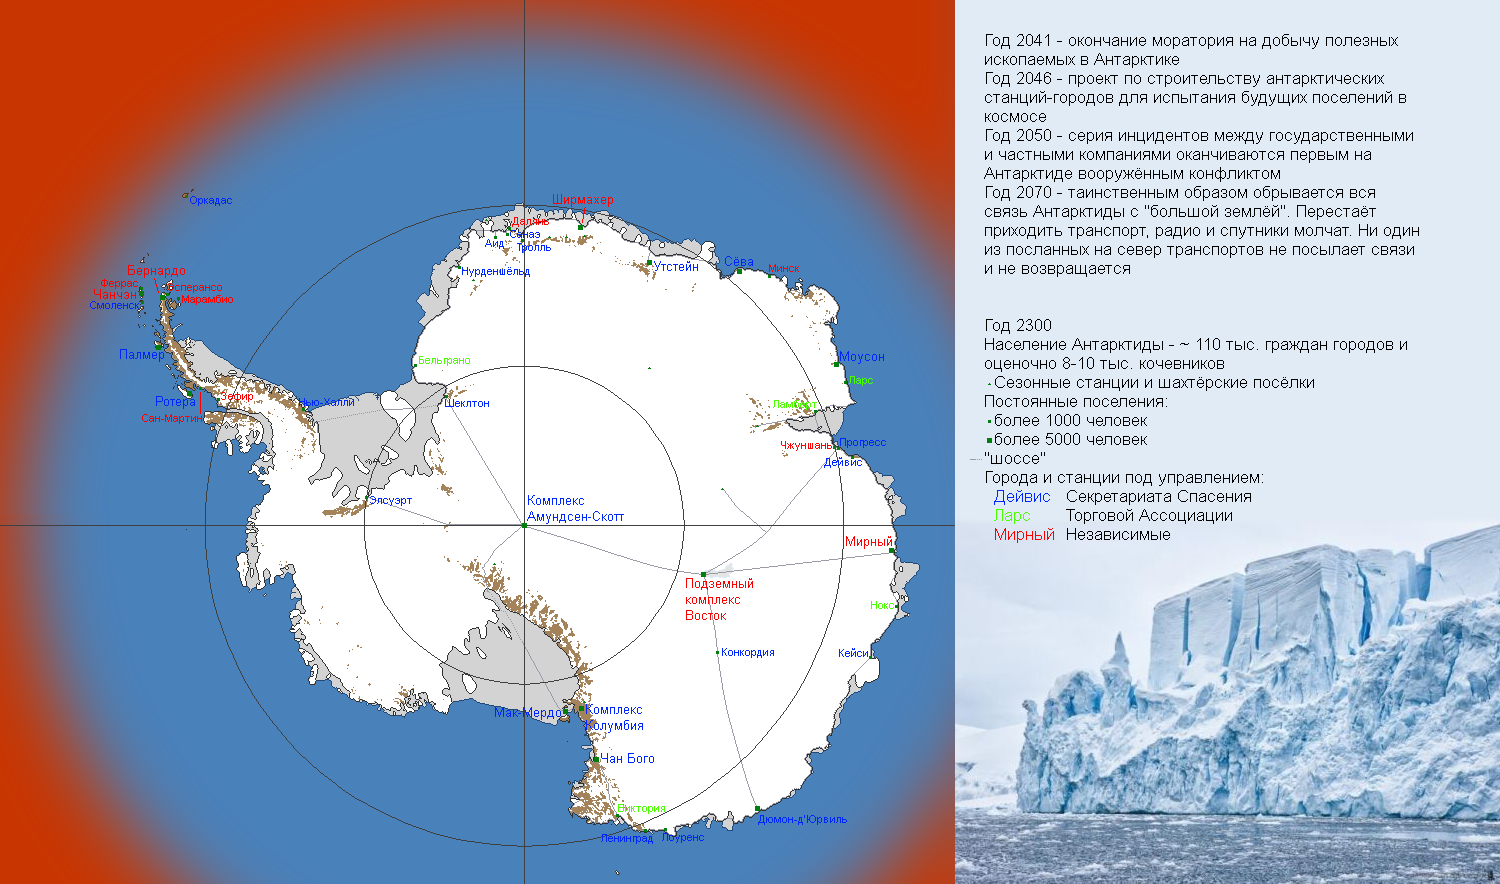 Крайняя точка антарктиды на карте. Станция Амундсен Скотт в Антарктиде на карте. Амундсен-Скотт на карте Антарктиды. Полярная станция Амундсен-Скотт на карте Антарктиды. Станции в Антарктиде на карте.